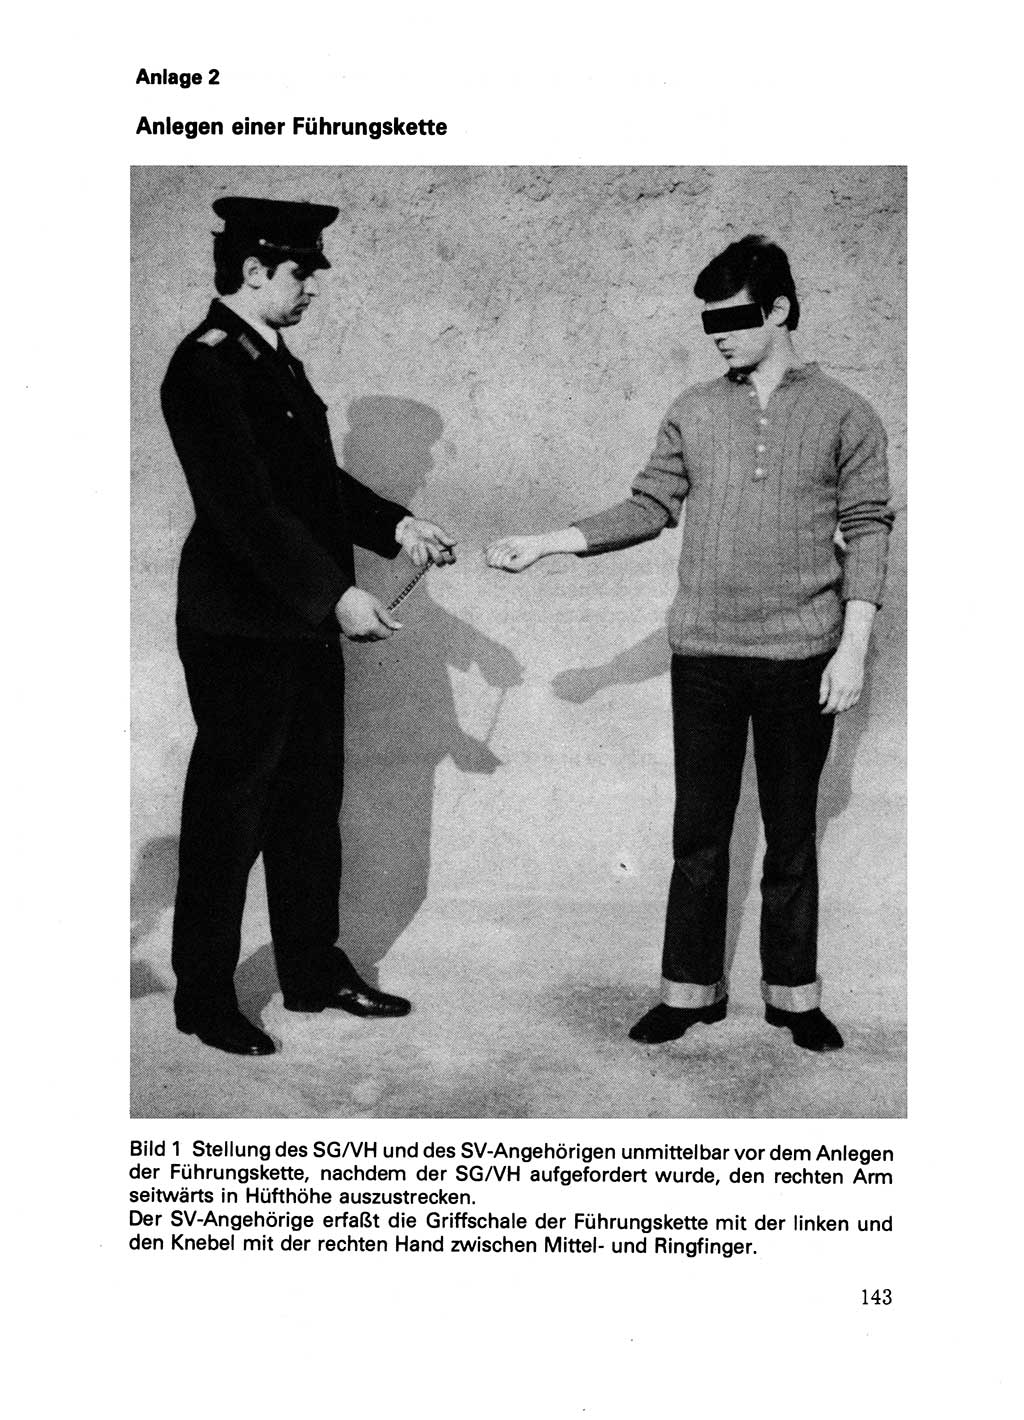 Handbuch für operative Dienste, Abteilung Strafvollzug (SV) [Ministerium des Innern (MdI) Deutsche Demokratische Republik (DDR)] 1981, Seite 143 (Hb. op. D. Abt. SV MdI DDR 1981, S. 143)